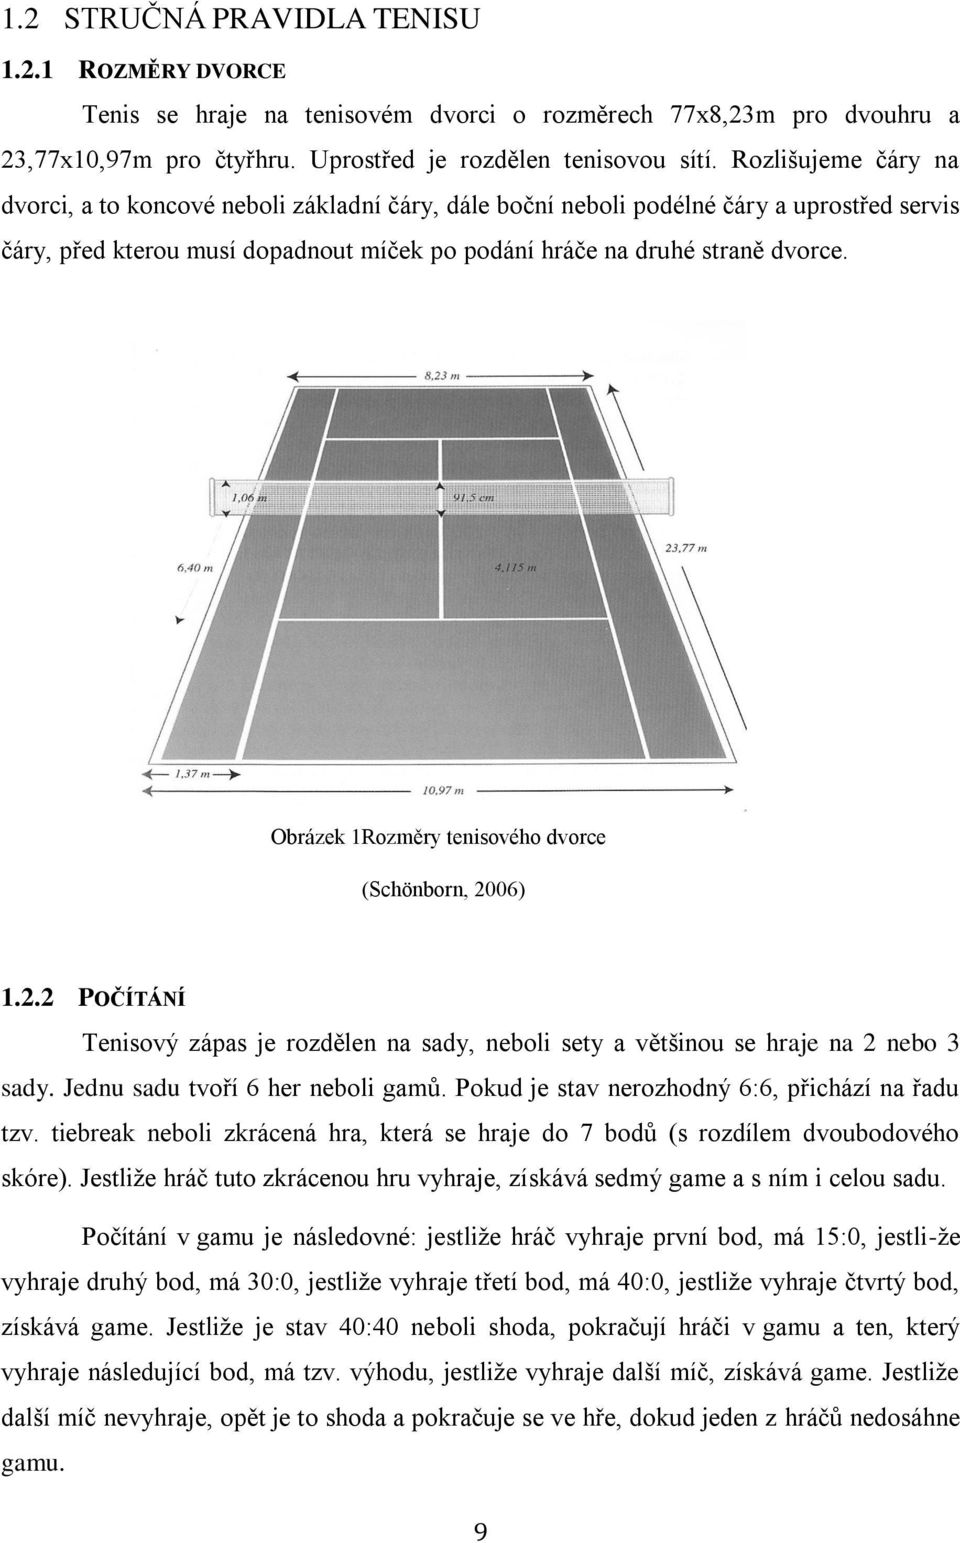 Obrázek 1Rozměry tenisového dvorce (Schönborn, 2006) 1.2.2 POČÍTÁNÍ Tenisový zápas je rozdělen na sady, neboli sety a většinou se hraje na 2 nebo 3 sady. Jednu sadu tvoří 6 her neboli gamů.